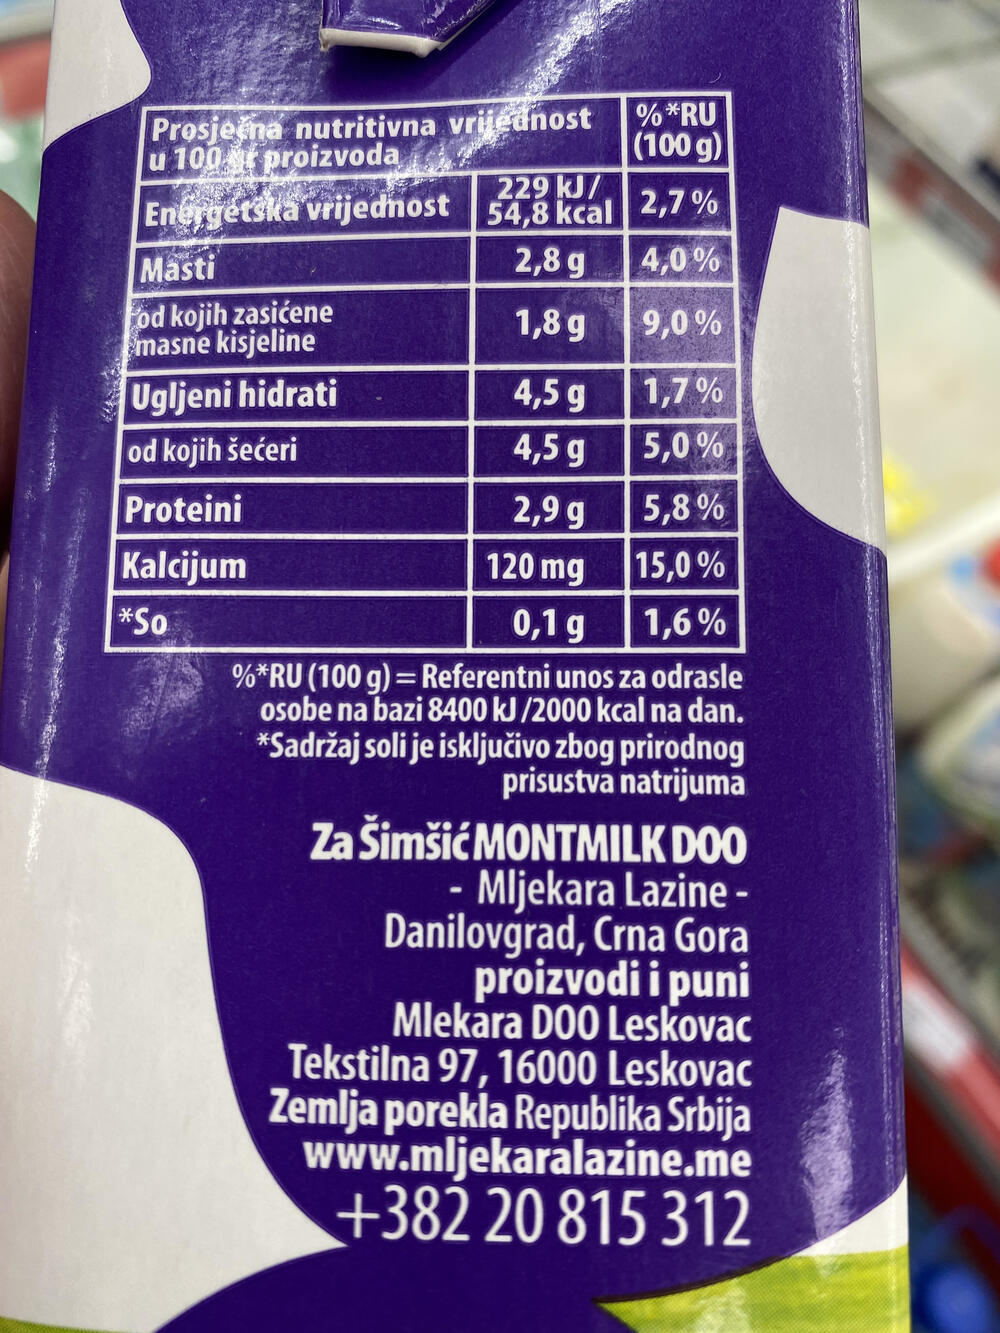 Srbijansko, a domaće: Mlijeko mljekare “Lazine” 